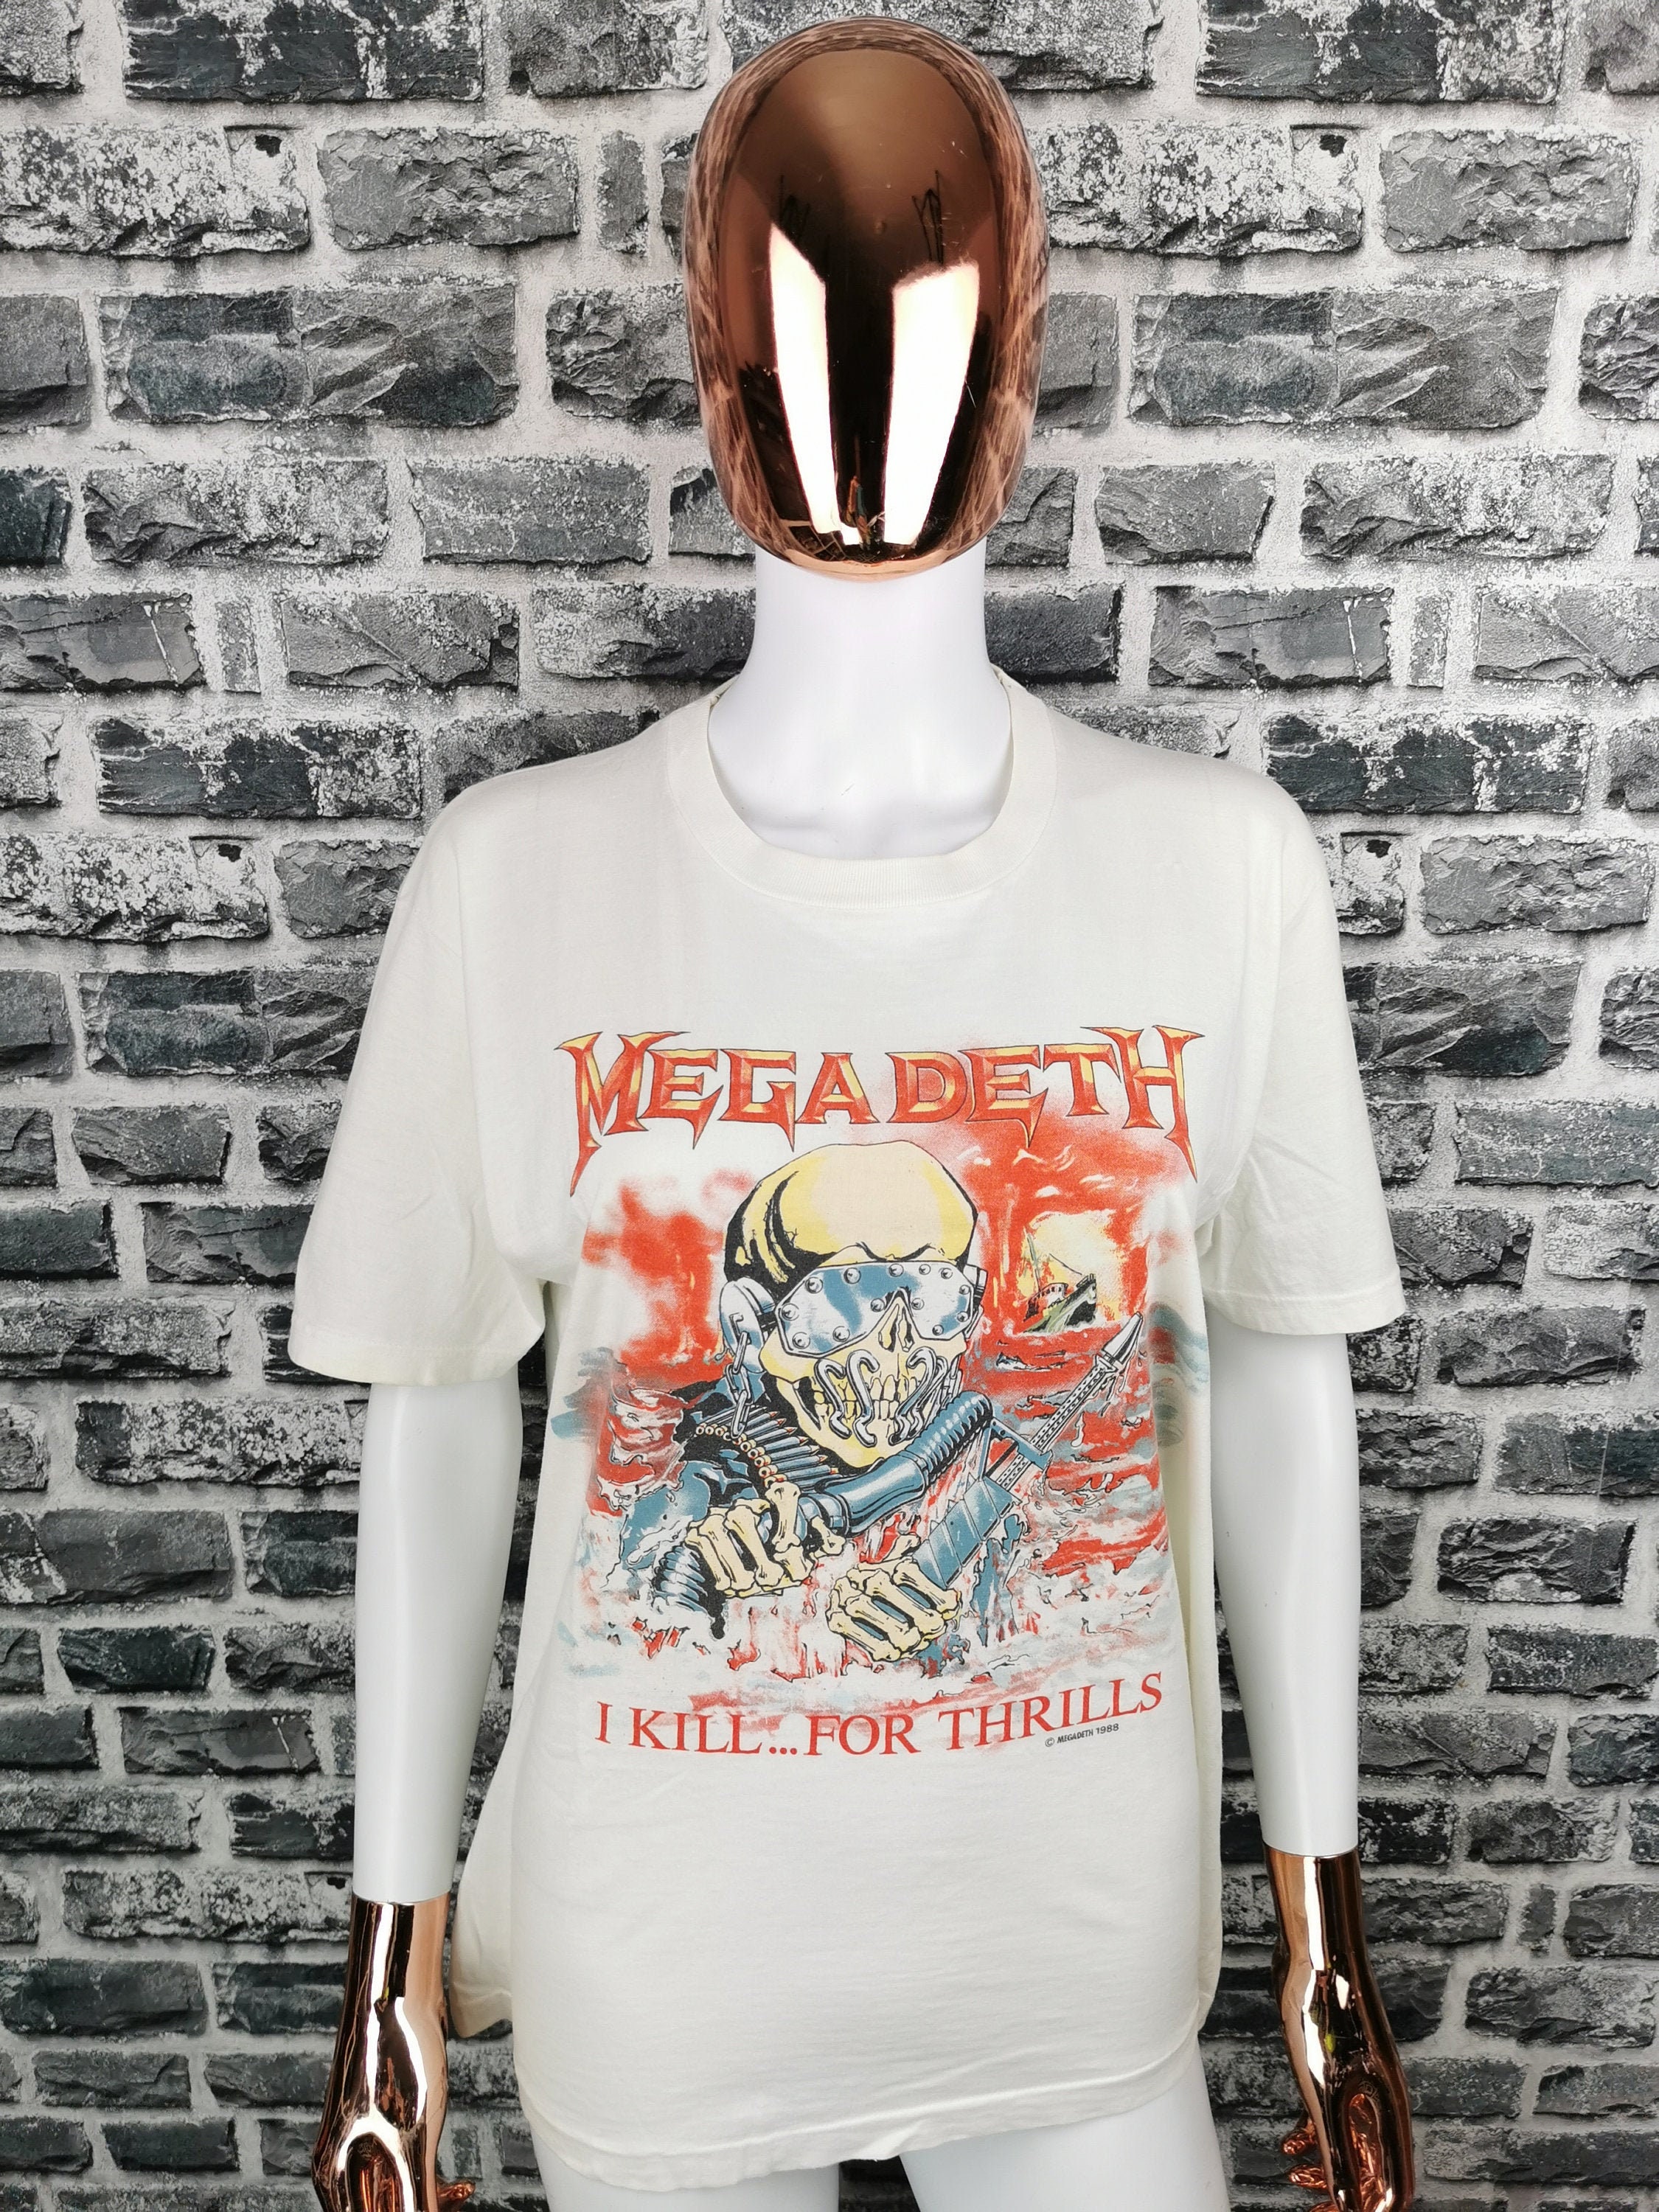 MEGADETH 1988 Vintage T-Shirt / I Kill...For Thrill / Clash of - Etsy